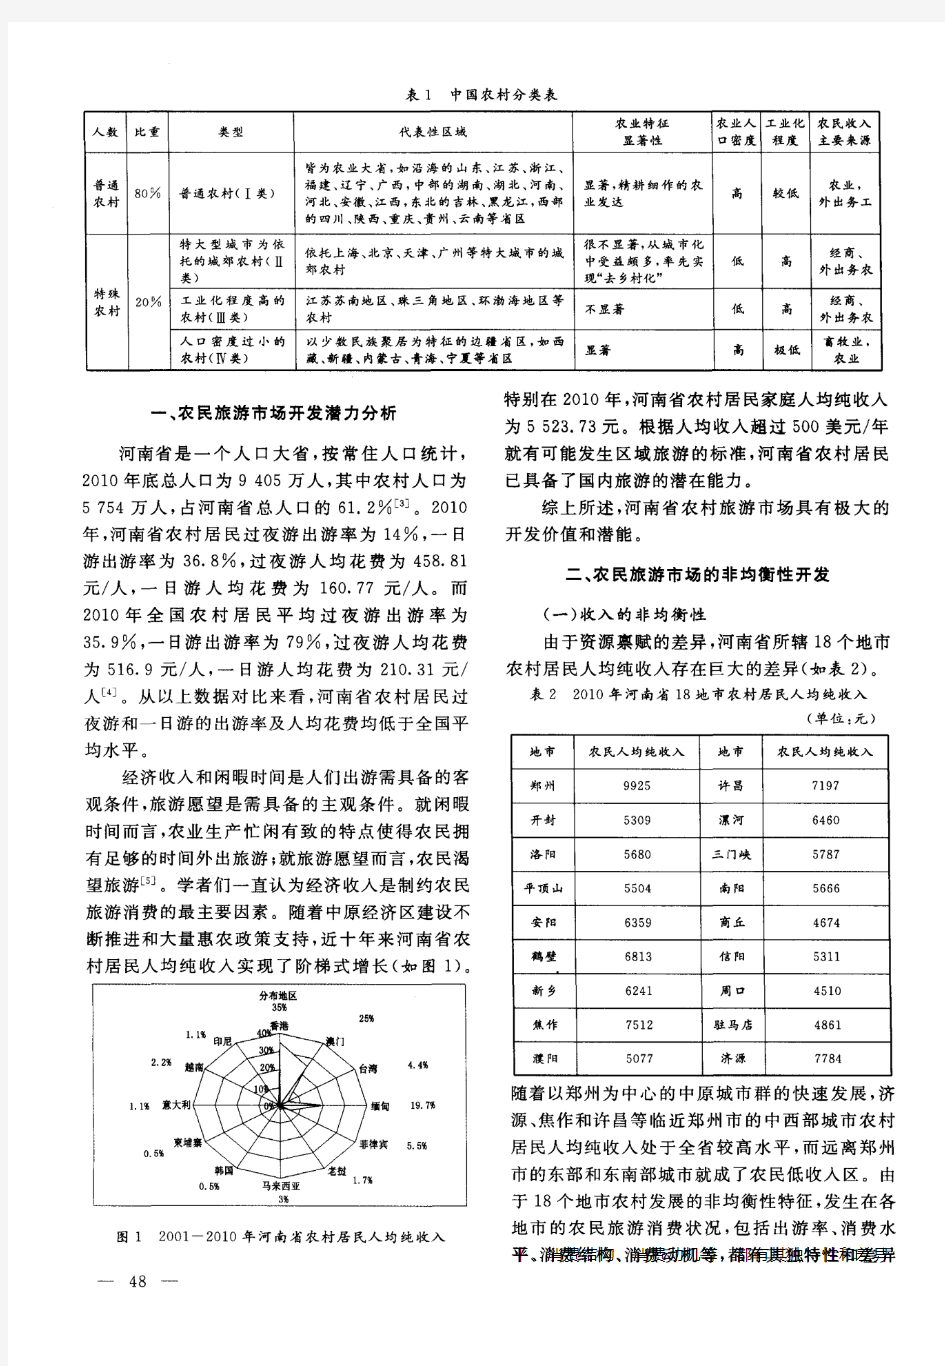 河南省农民旅游市场非均衡性开发研究